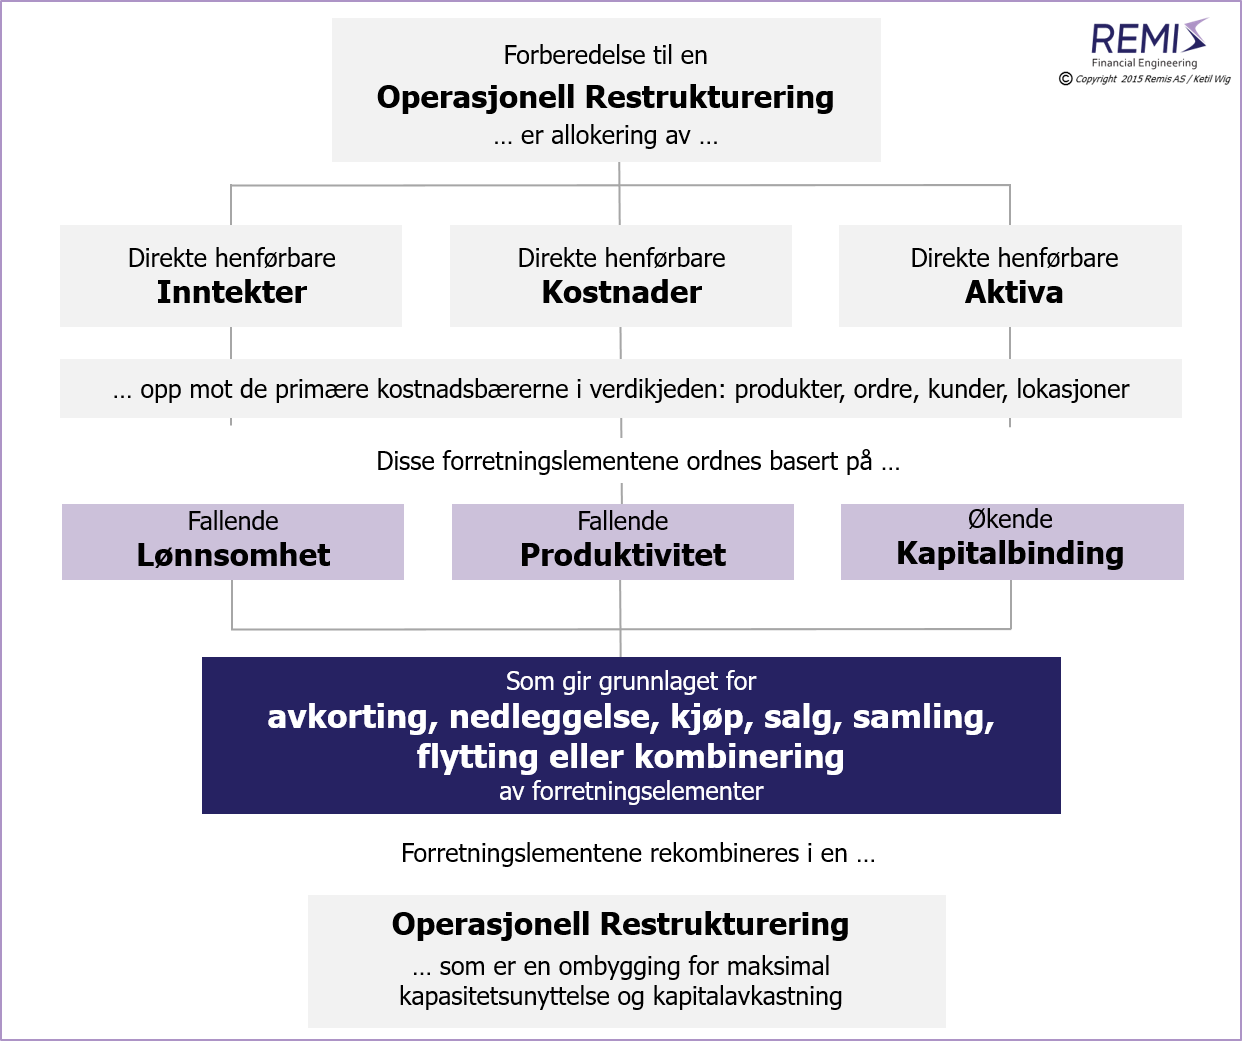 En modell for operasjonell restrukturing, en restrukturering er en trinnvis ombygging av en 
  forretningsportefølje med tilhørende aktiva - for optimering av kapasitetsutnyttelse og kapitalavkastning,
  
  operasjonell restrukturering, operasjonelle restruktureringer, potensial for operasjonell restrukturering, potensial til operasjonell restrukturering, plan for operasjonell restrukturering, 
  hvordan gjøre en operasjonell restrukturering, hvordan gjennomføre en operasjonell restrukturering, 
  prosjekt for operasjonell restrukturering, tiltak for operasjonell restrukturering, forberedelse for operasjonell restrukturering, forberedelse til operasjonell restrukturering, 

  restrukturering, restruktureringer, potensial for restrukturering, potensial til restrukturering, plan for restrukturering, 
  hvordan gjøre en restrukturering, hvordan gjennomføre en restrukturering, 
  prosjekt for restrukturering, tiltak for restrukturering, forberedelse for restrukturering, forberedelse til restrukturering, 

  forretningsportefølje, ombygging av forretningsportefølje, optimering av forretningsportefølje, 
  produktlønnsomhet, kundelønnsomhet, lokasjonslønnsomhet, kostnadsallokering, kostnadsallokeringer, 
  effektiv utnyttelse av kapital, effektiv kapitalutnyttelse, kapitalavkastning, optimal kapitalavkastning, optimering av kapitalavkastning, 
  avkastning på sysselsatt kapital, 

  konsulent omstrukturering, rådgiver omstrukturering, 
  bedrift, virksomhet, selskap, aksjeselskap, firma